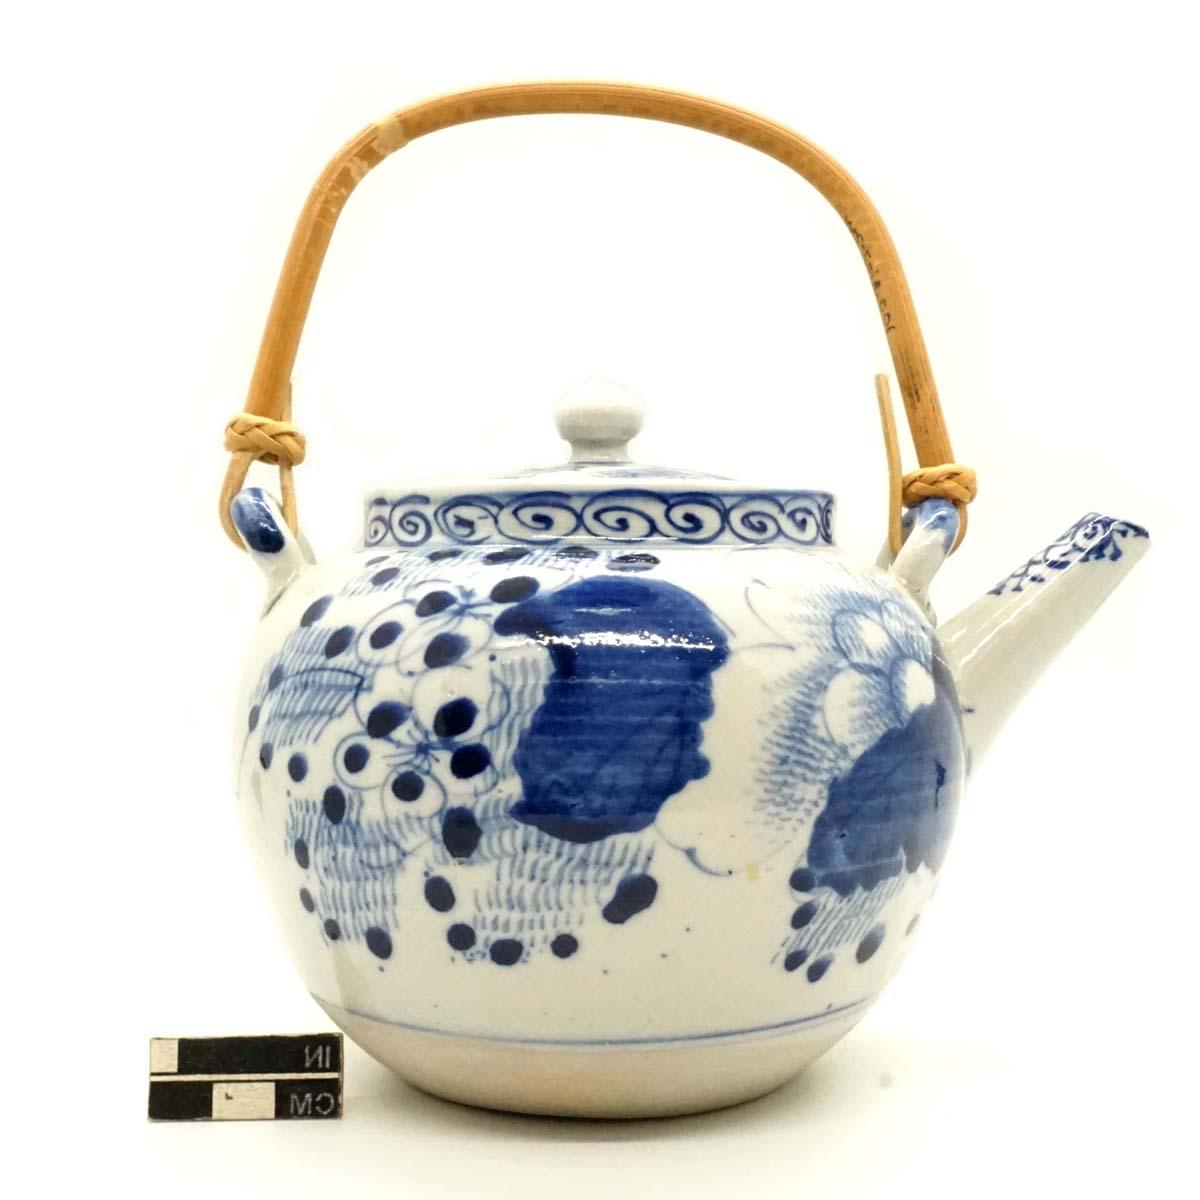 多宾式竹柄茶壶, Aizu-Hongo器物带有一些(手工绘制的钴)装饰, 瓷.